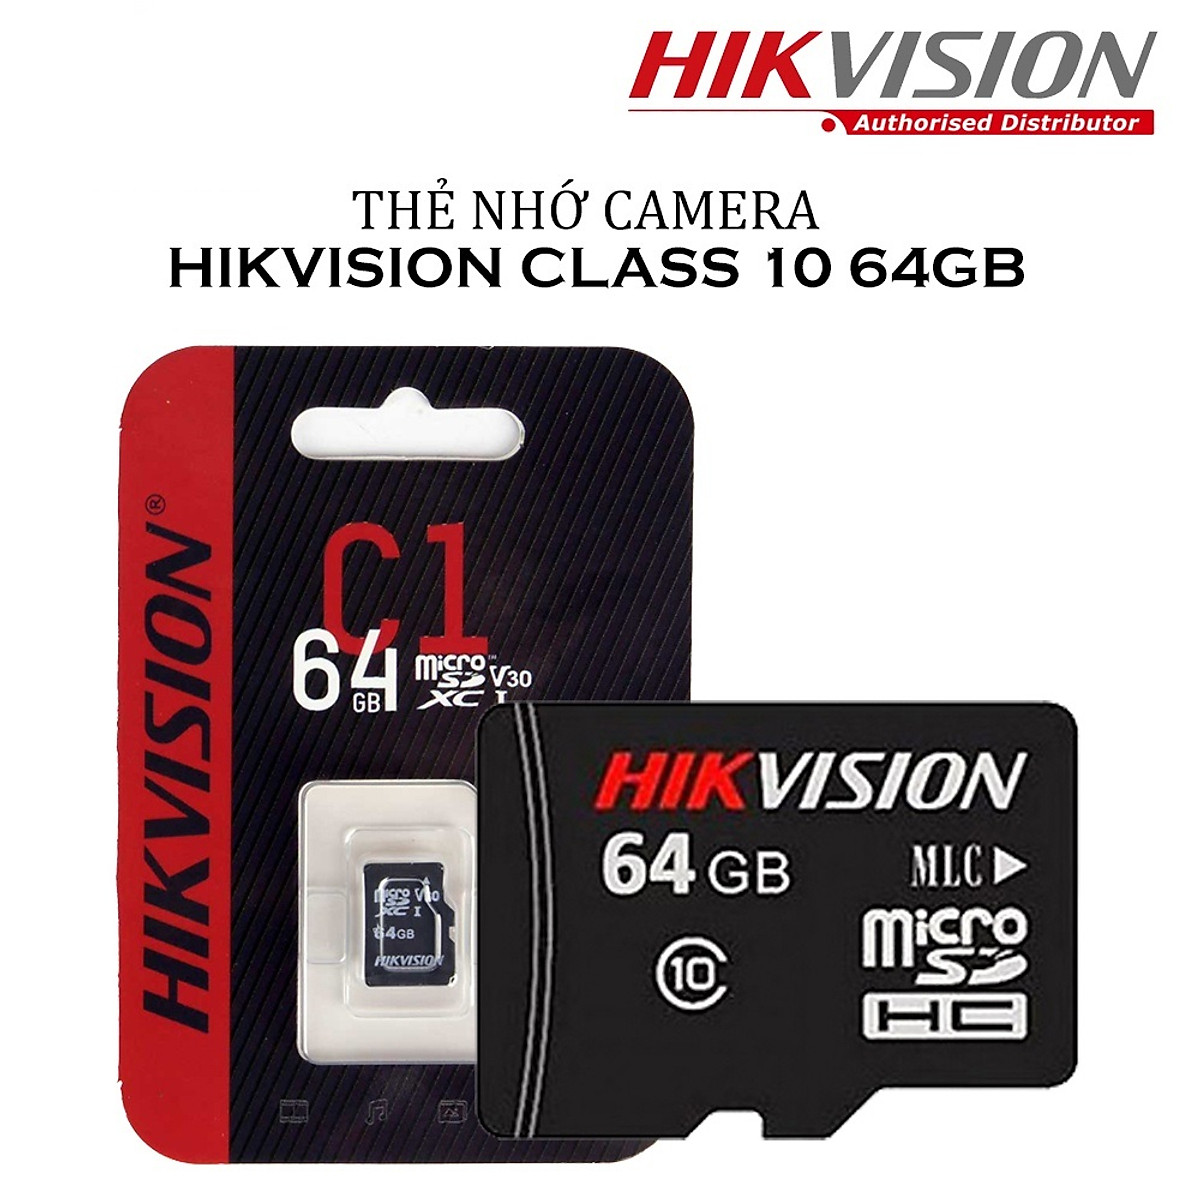 Với thẻ nhớ Micro SD HIKVISION 64GB, bạn sẽ không còn phải lo lắng về việc lưu trữ nhiều dữ liệu hay video chất lượng cao trong thiết bị di động của mình. Với dung lượng rộng rãi 64GB, thẻ nhớ này đảm bảo cho bạn không bị gián đoạn khi ghi hình hoặc lưu trữ nhiều dữ liệu photo và video.